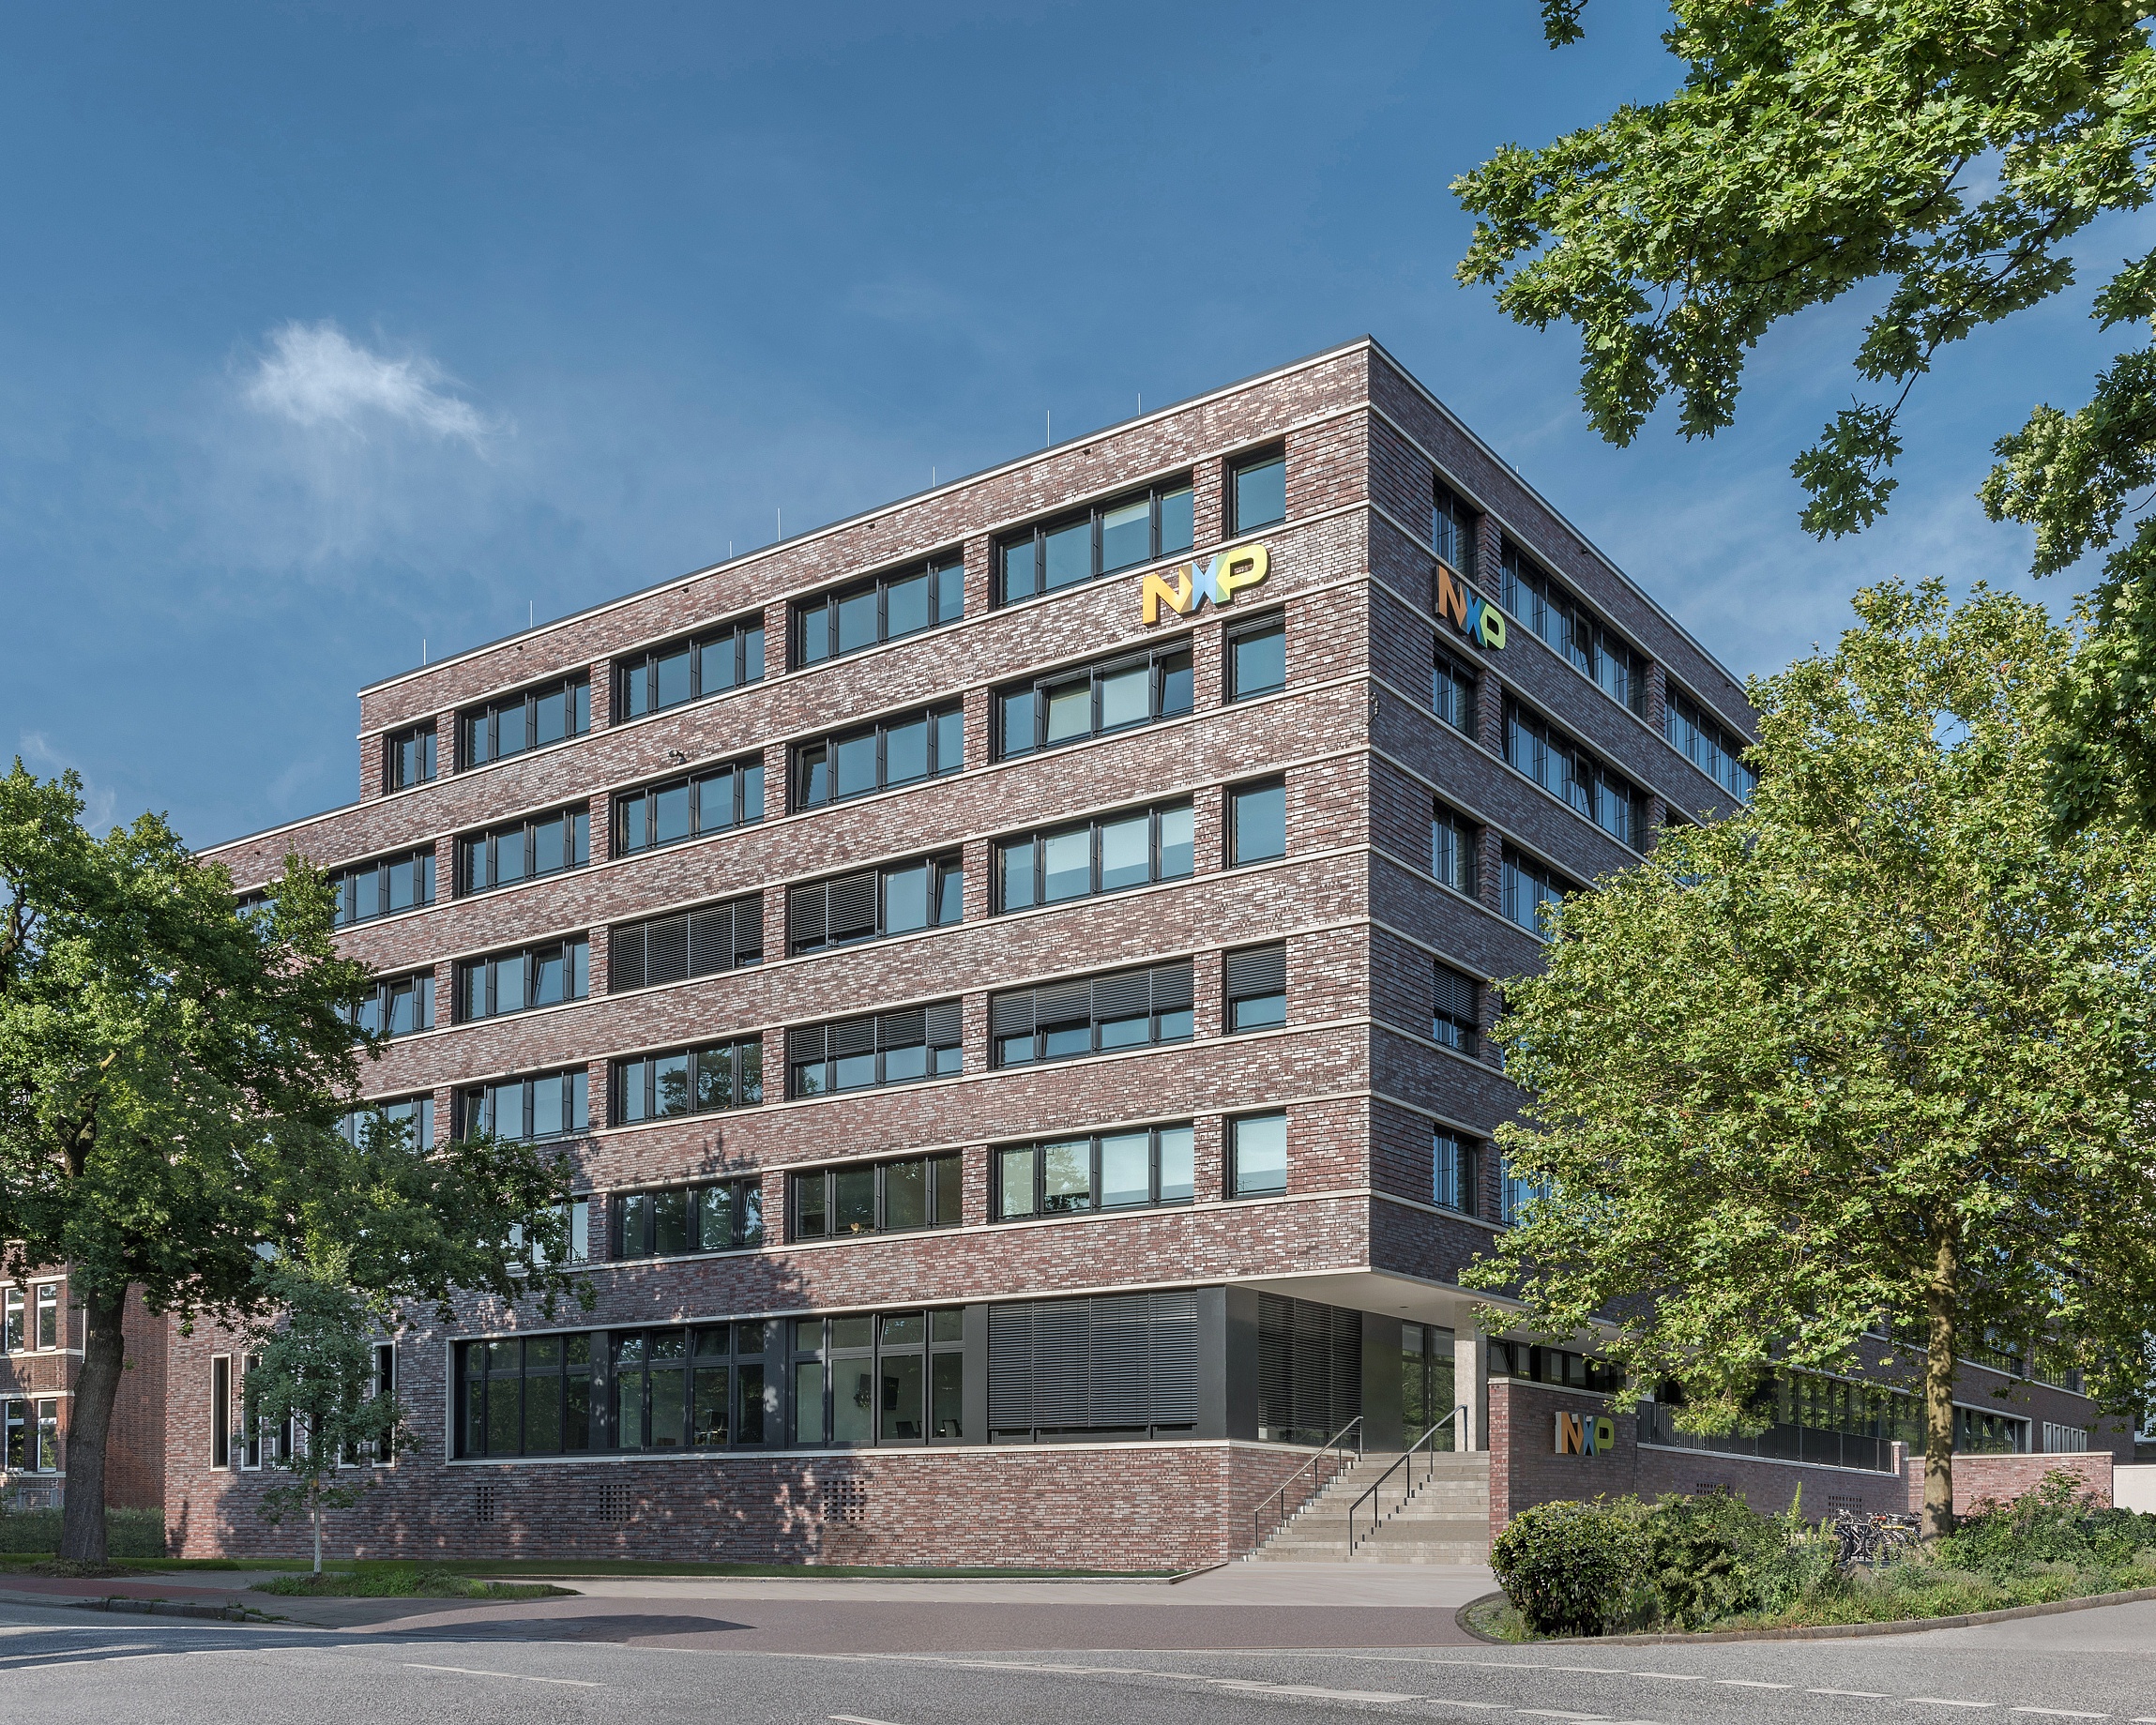 NXP Гамбург – проект, реализованный Arbonia